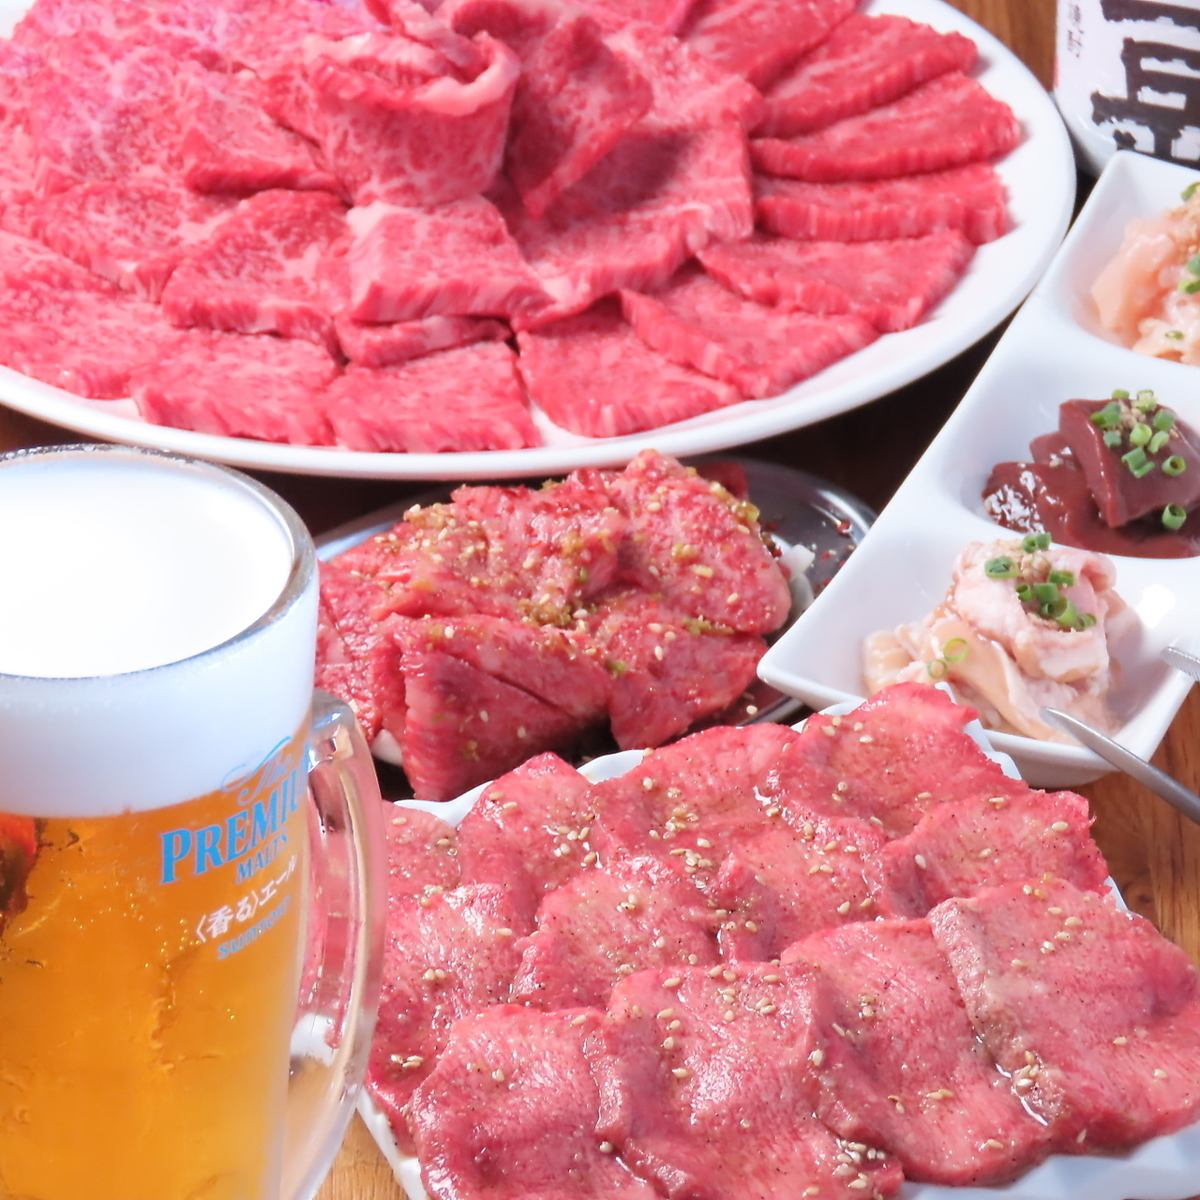 从川尻站步行约11分钟 可以品尝到高级熟成肉的烤肉店在川尻站开业了！